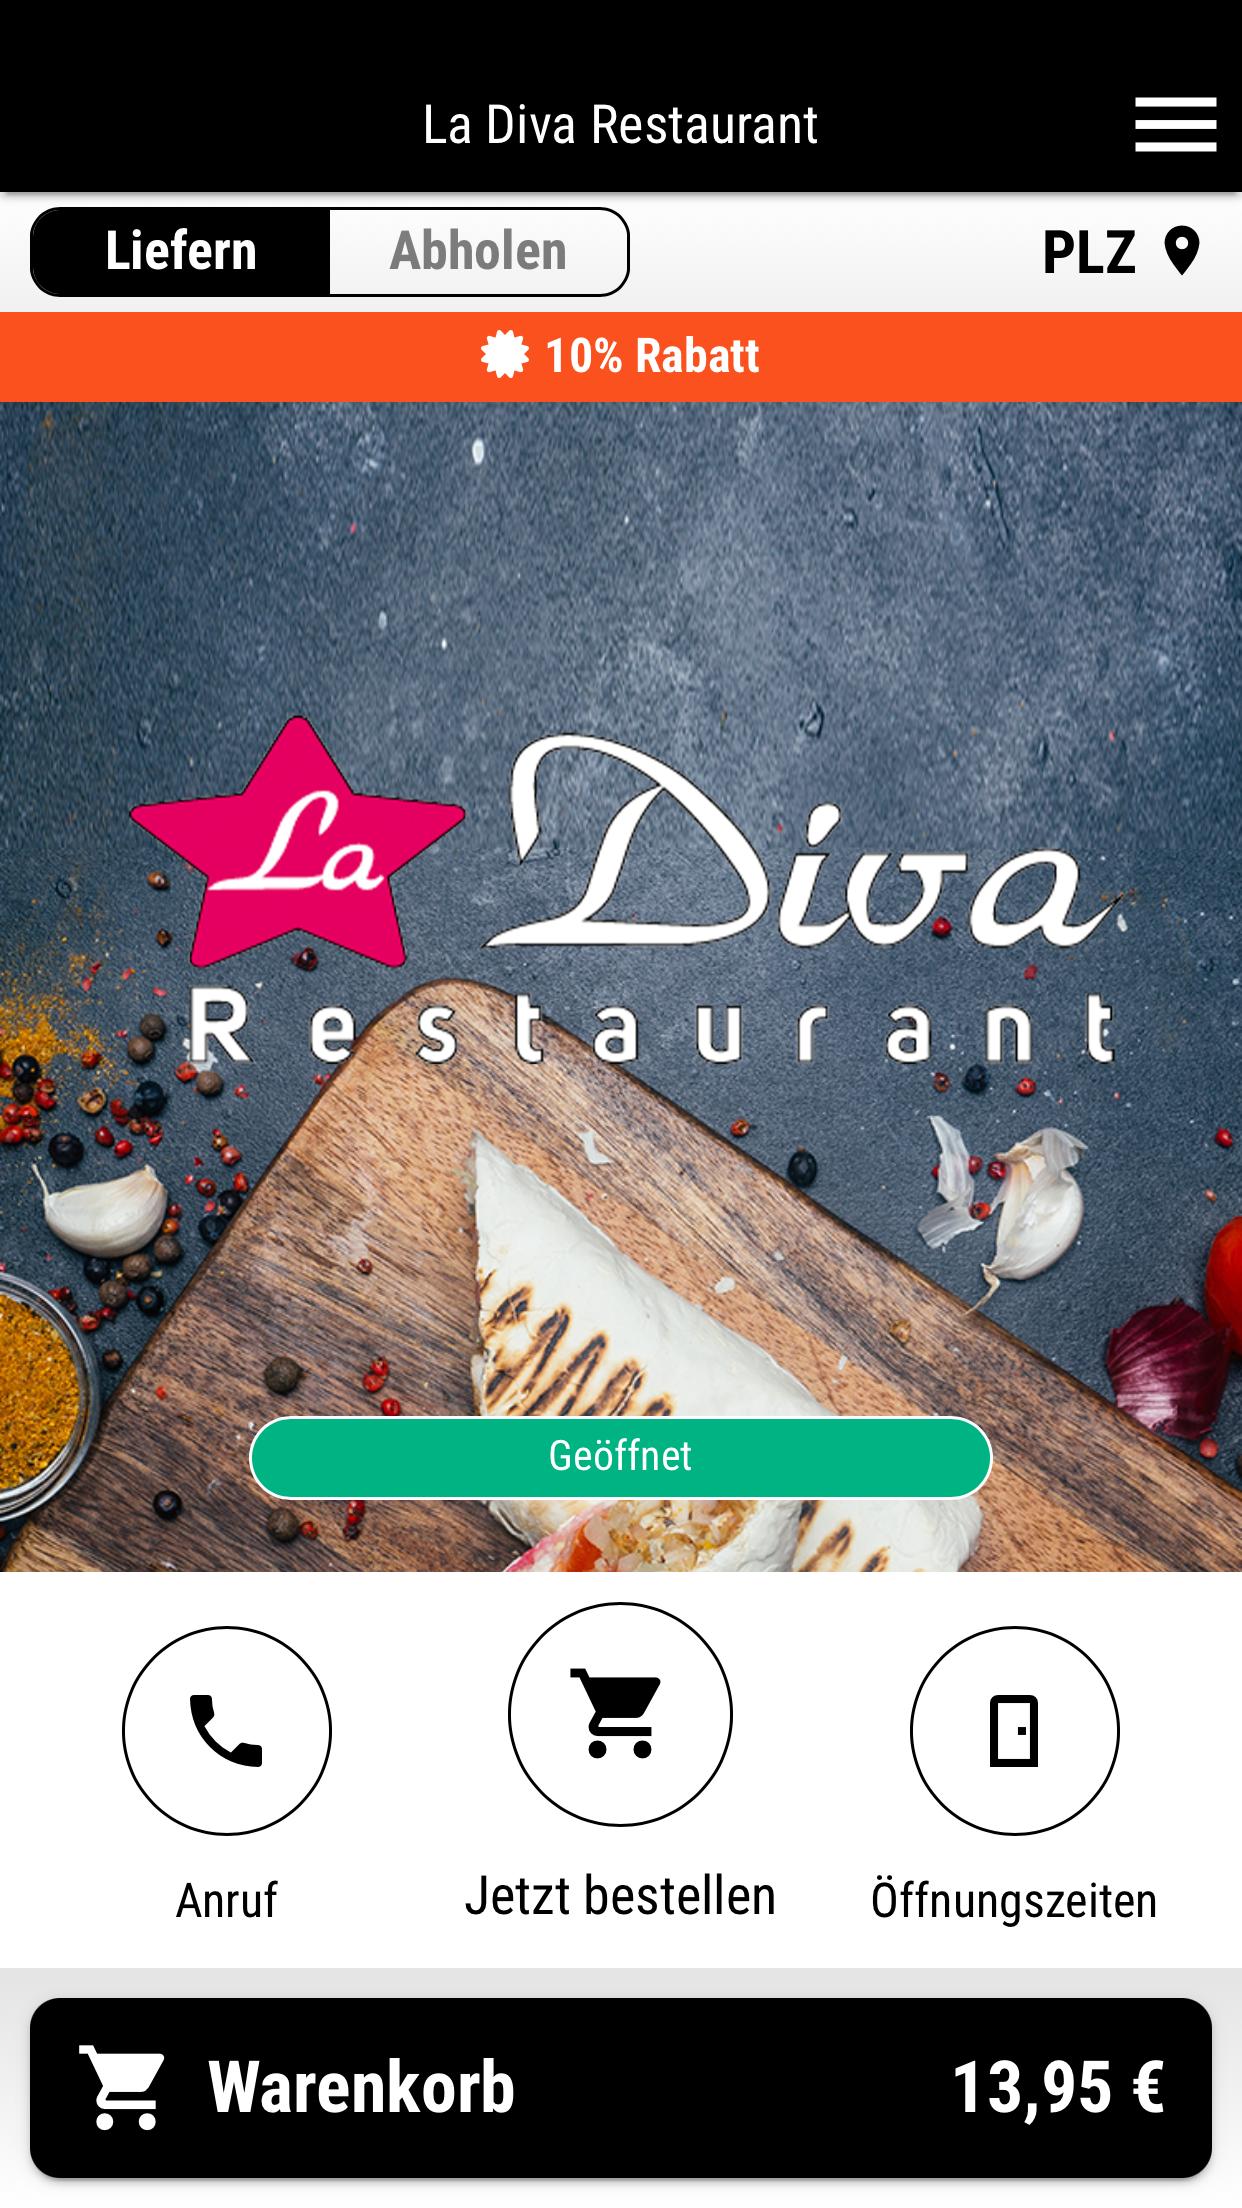 tetraeder Geometri ophavsret La Diva Restaurant for Android - APK Download